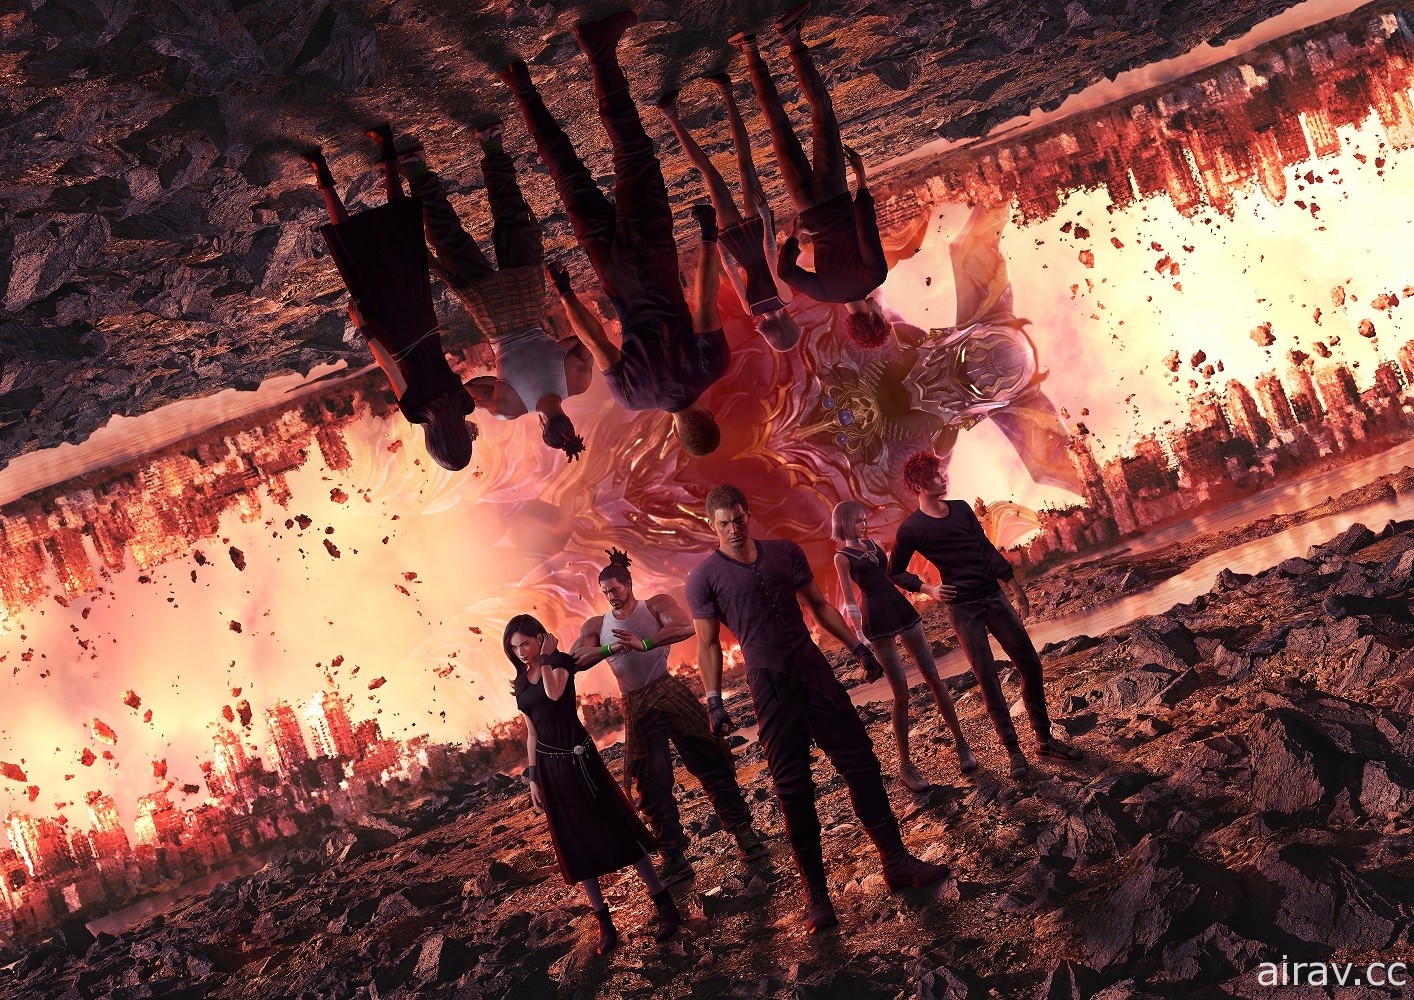 《樂園的異鄉人 Final Fantasy 起源》下載版 75 折限時優惠實施中